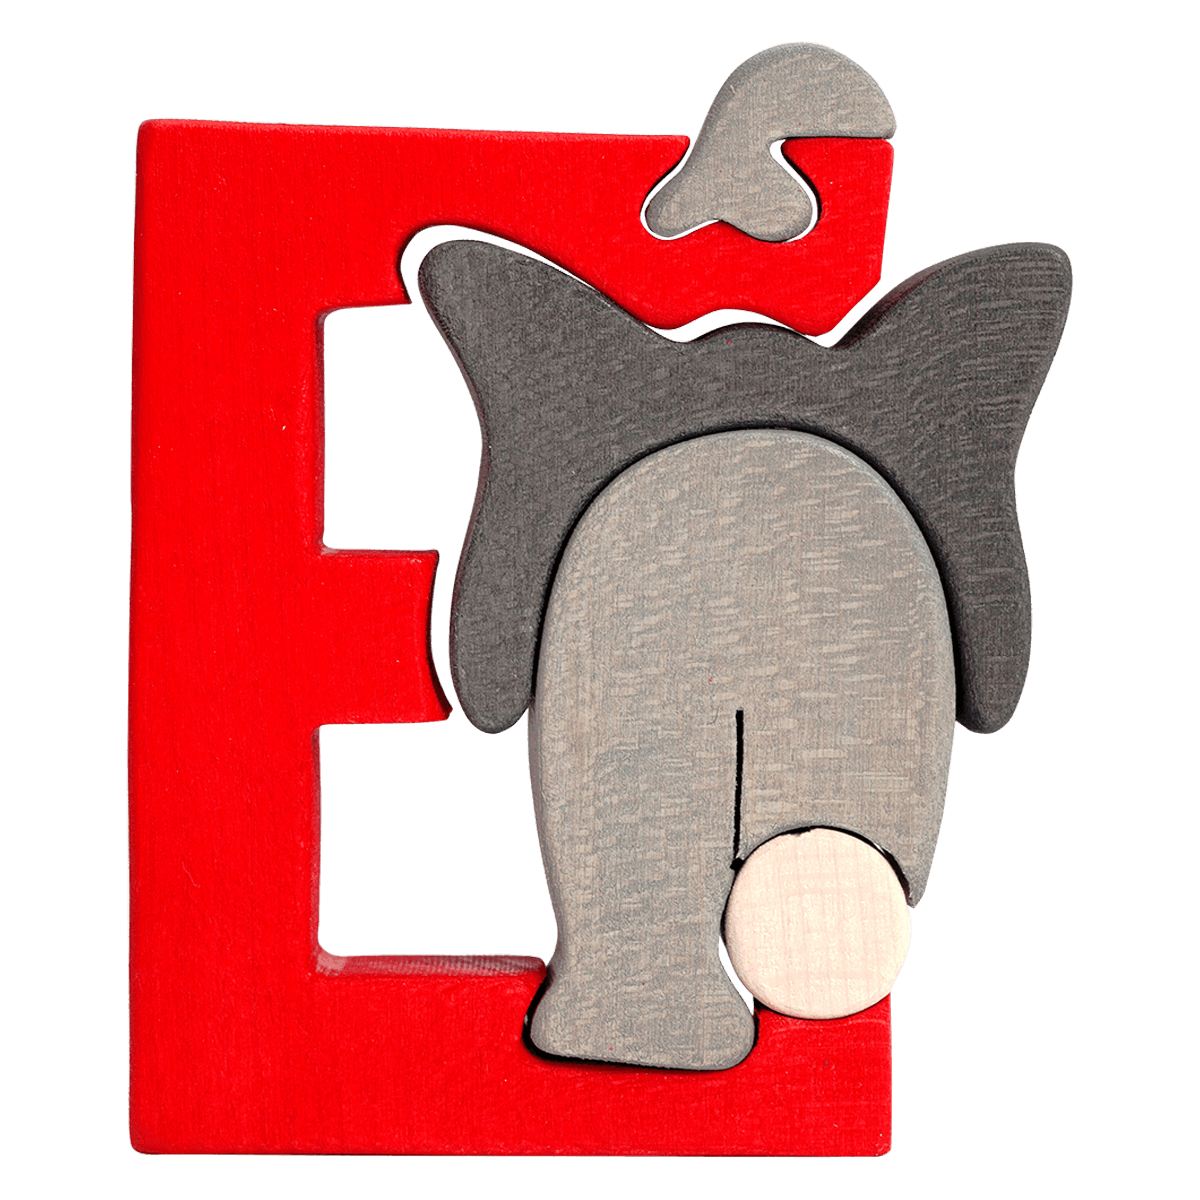 E elephant. Пазл буква е. Elephant буква алфавита e. Пазл буква н. Пазл Letter c.